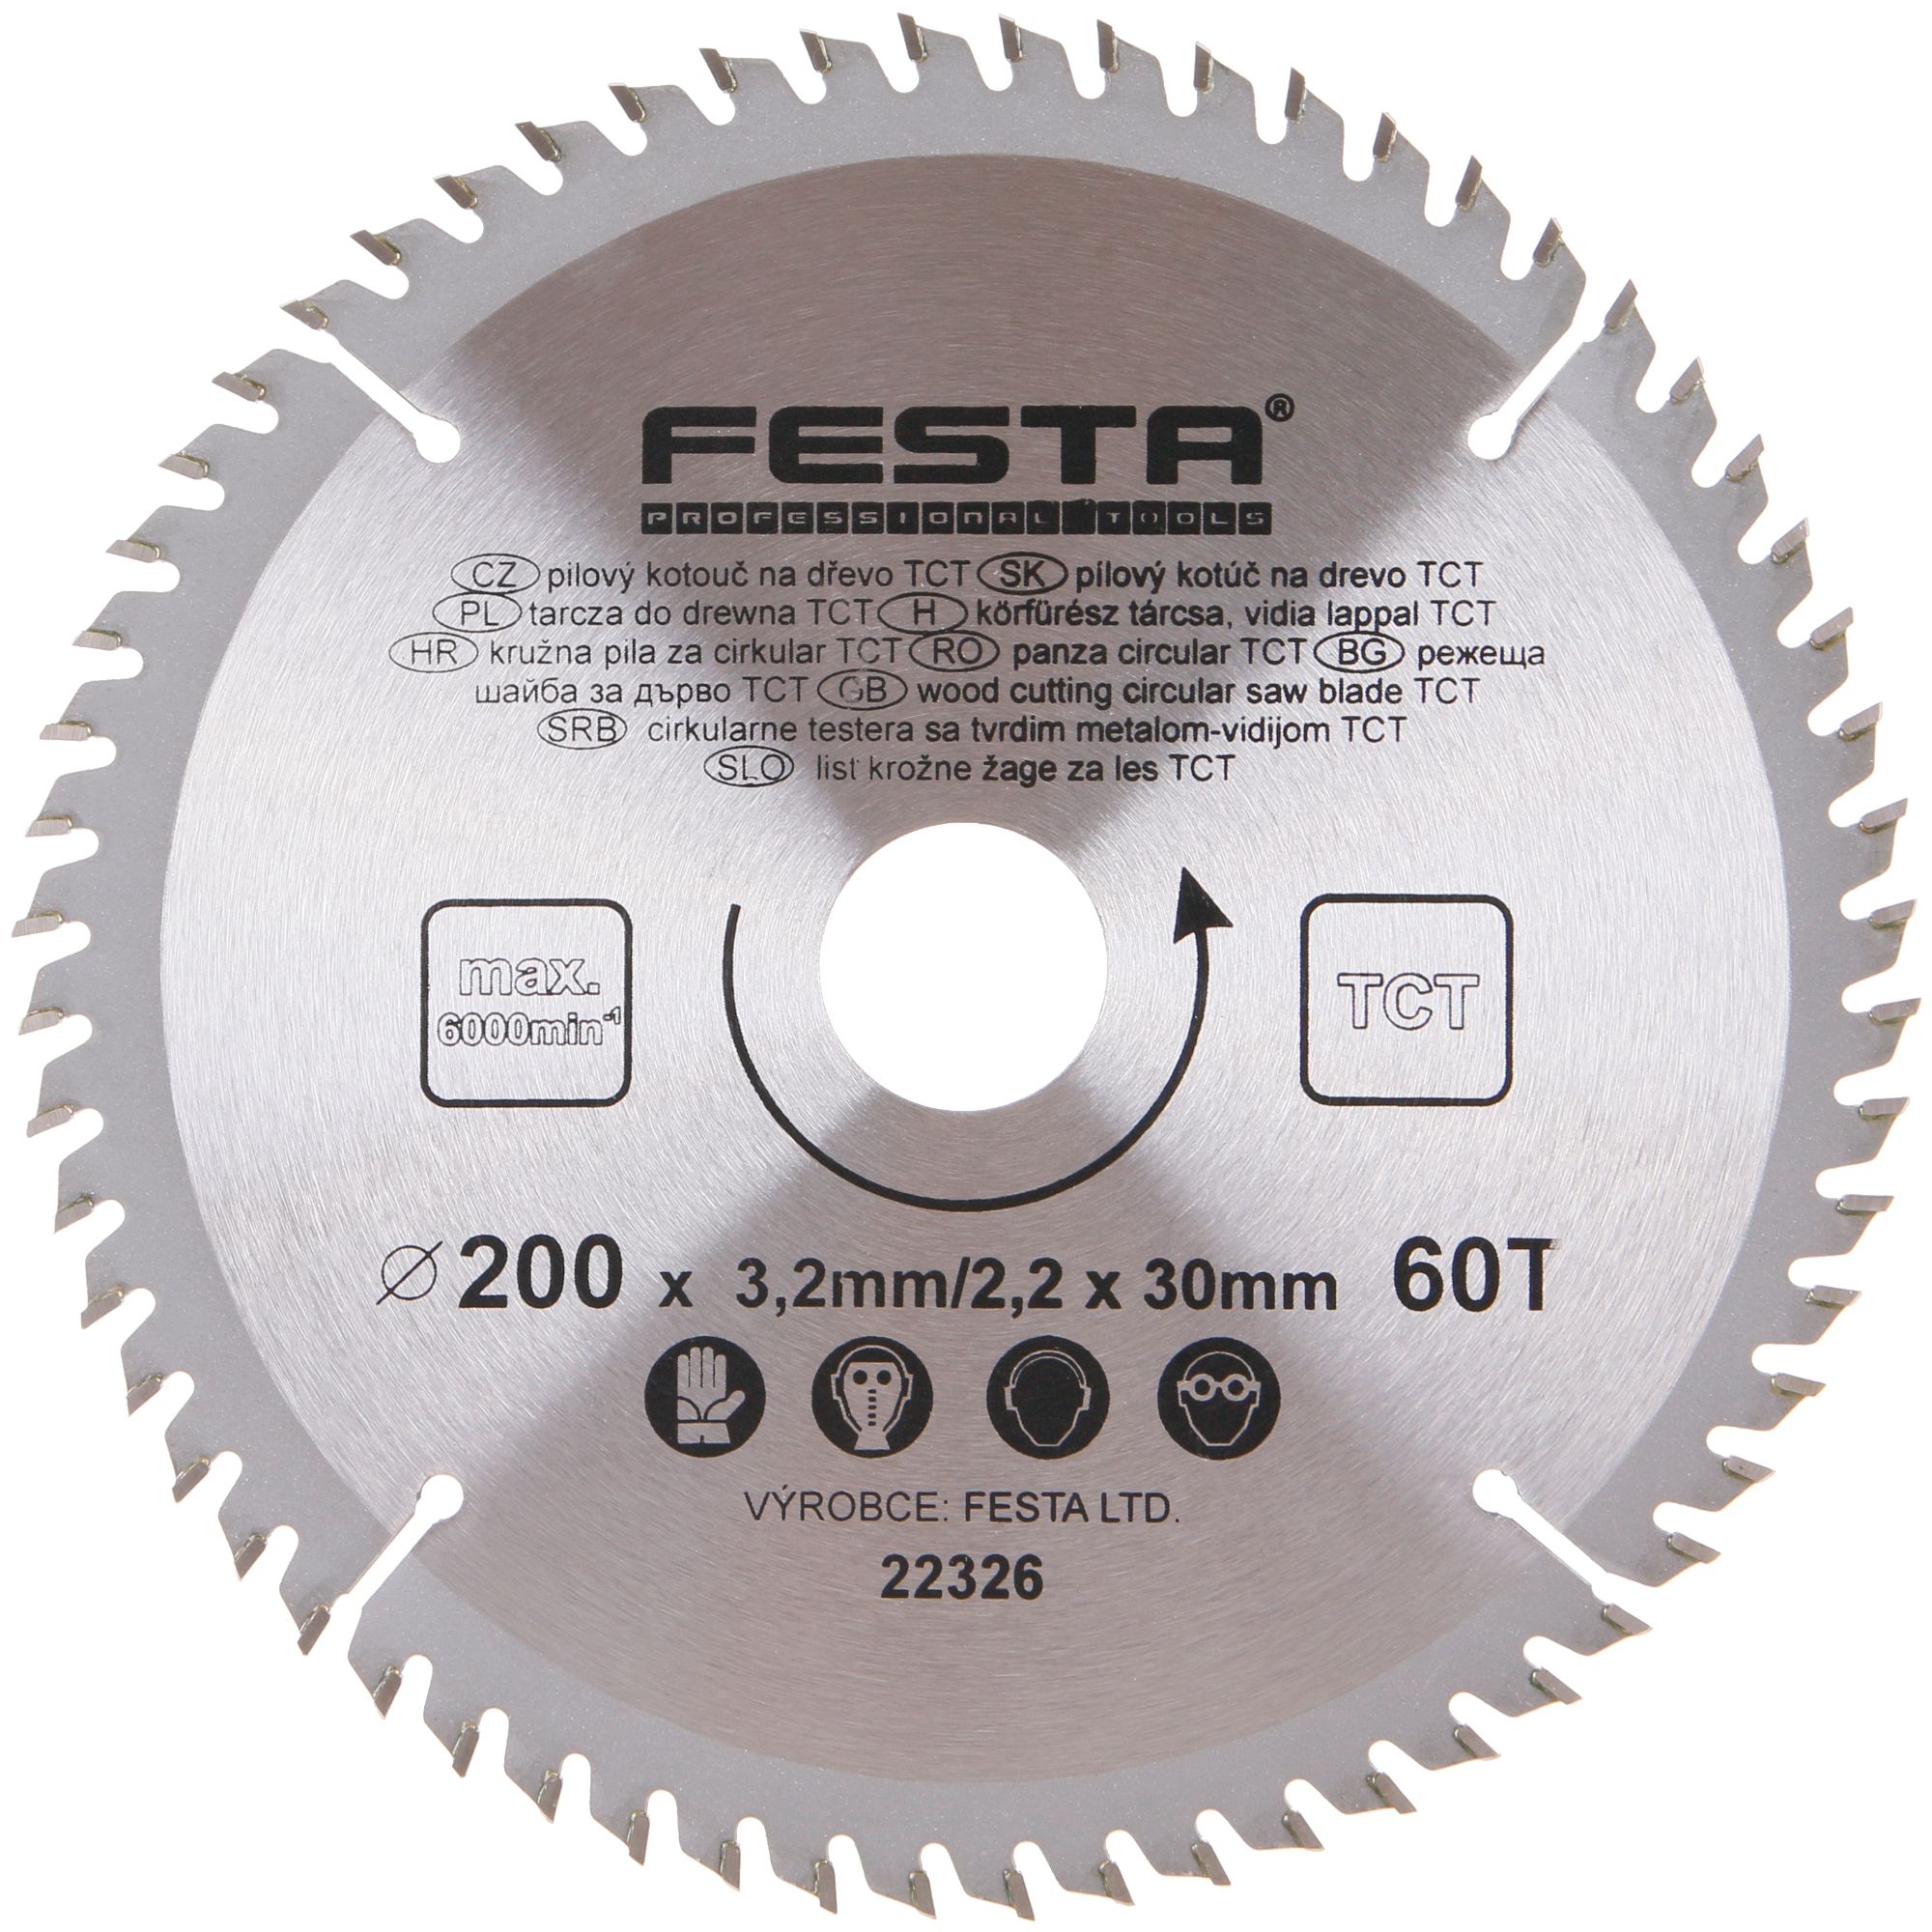 FESTA 22326 Kotouč pilový, na dřevo, 200mm, 60 zubů, 30/20mm, 3,2mm, TCT